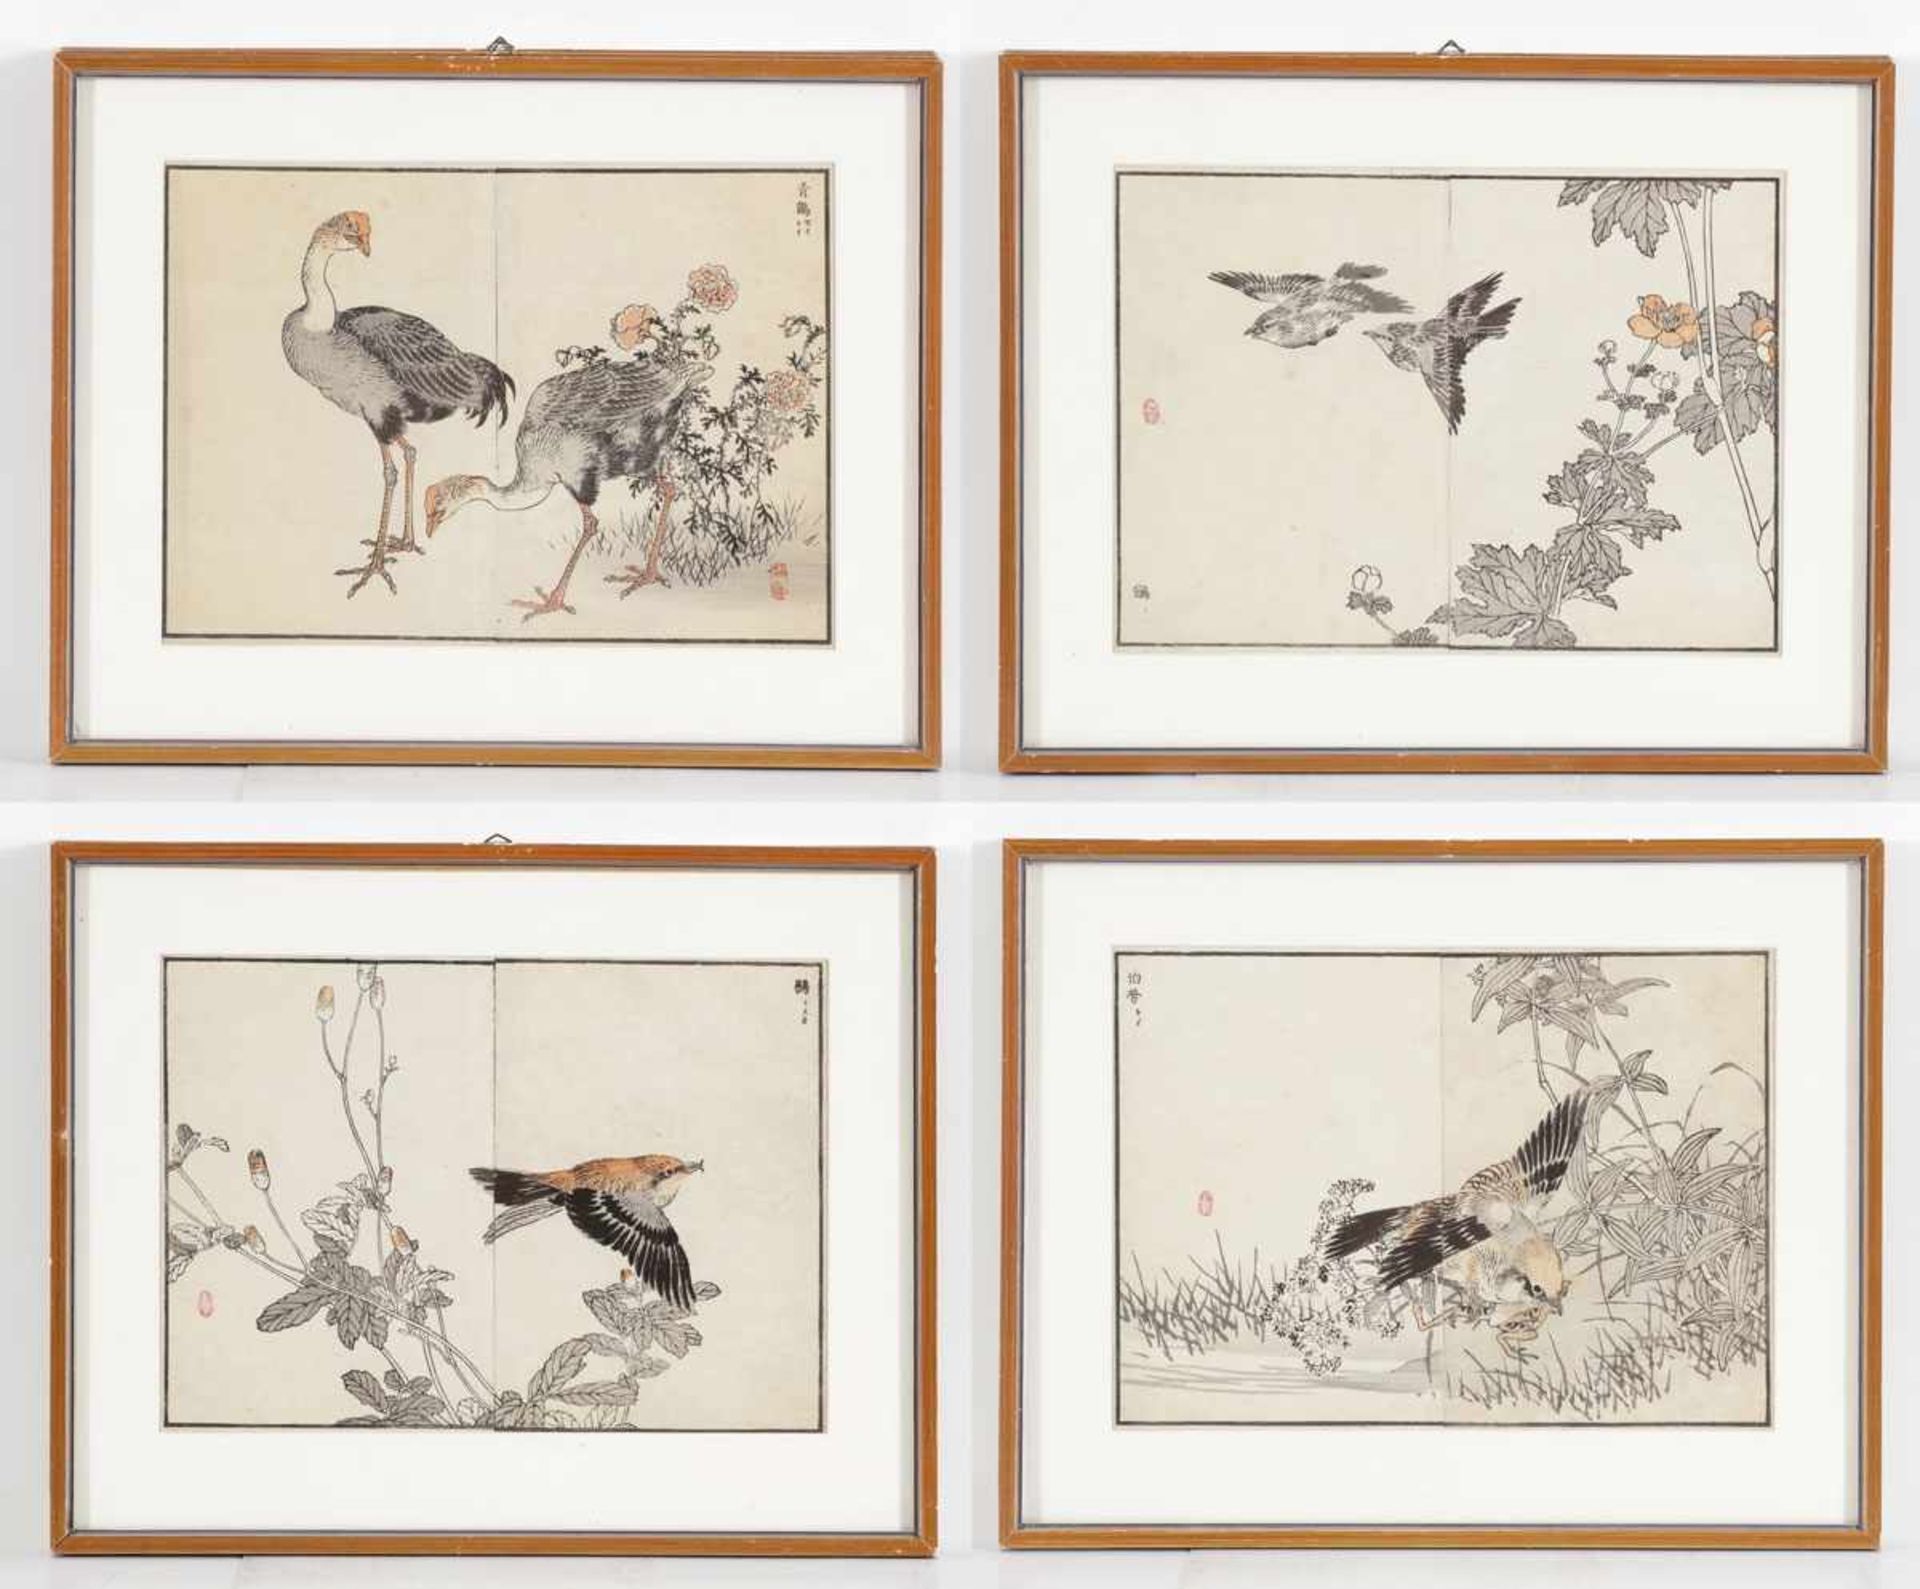 Japanischer Grafiker des 19. Jahrhunderts - Tierdarstellungen - 4 kolor. Holzschnitte.